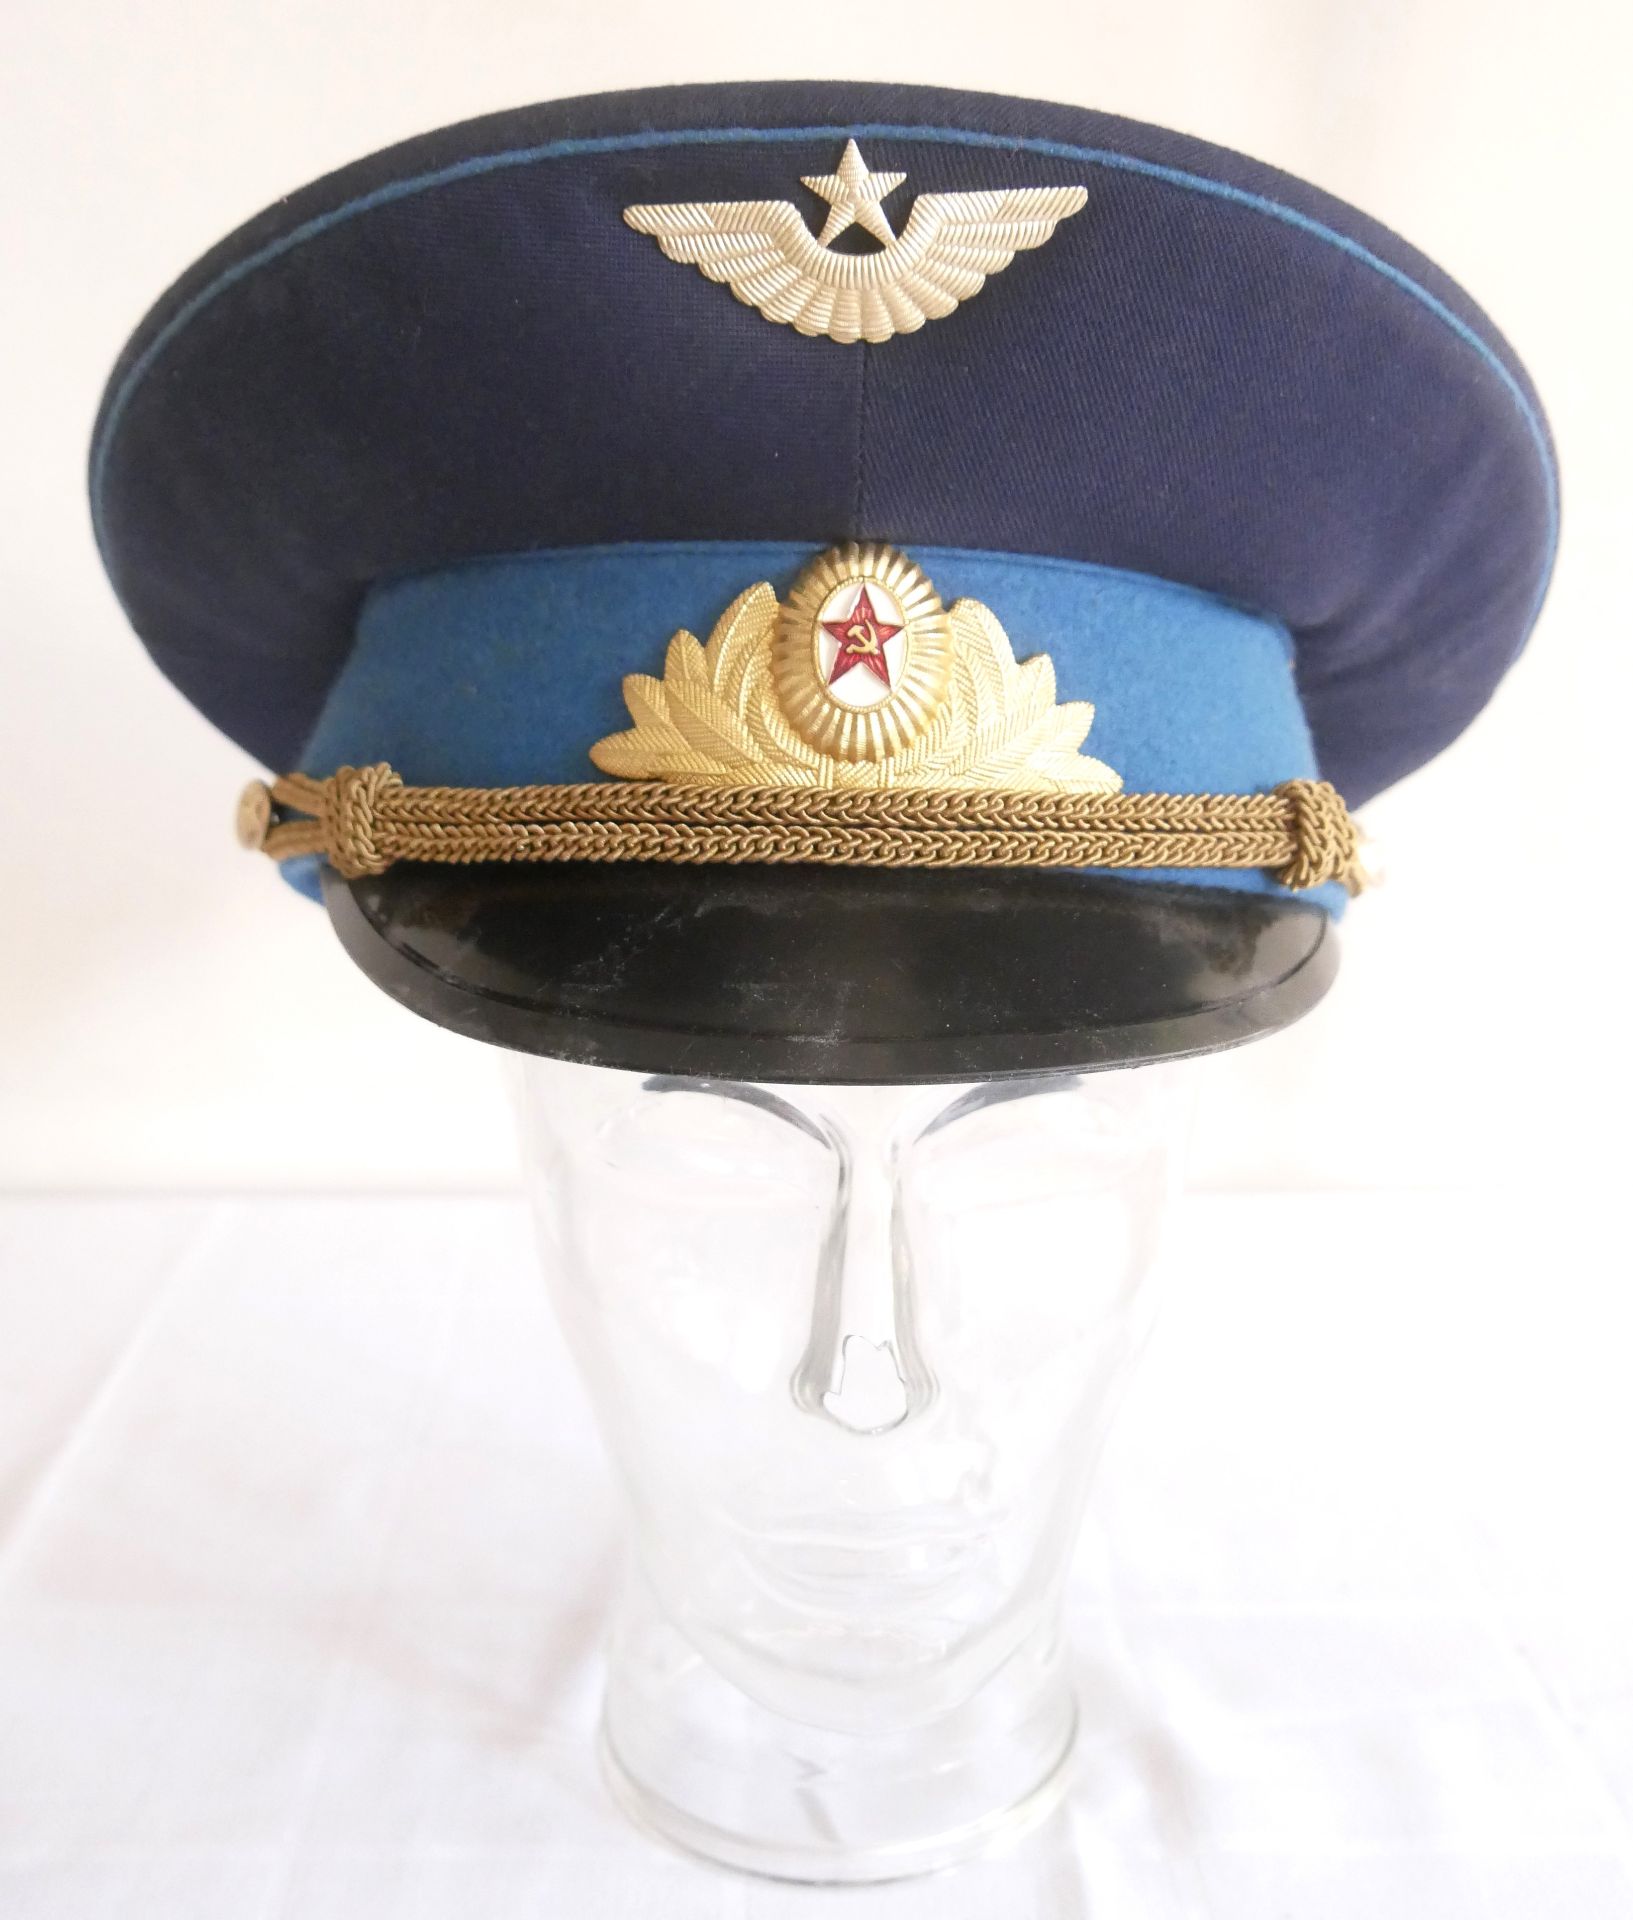 Aus Sammelauflösung! Uniformmütze / Schirmmütze UDSSR CCCP Armee Offizier 1990. Größe 59, in blau,